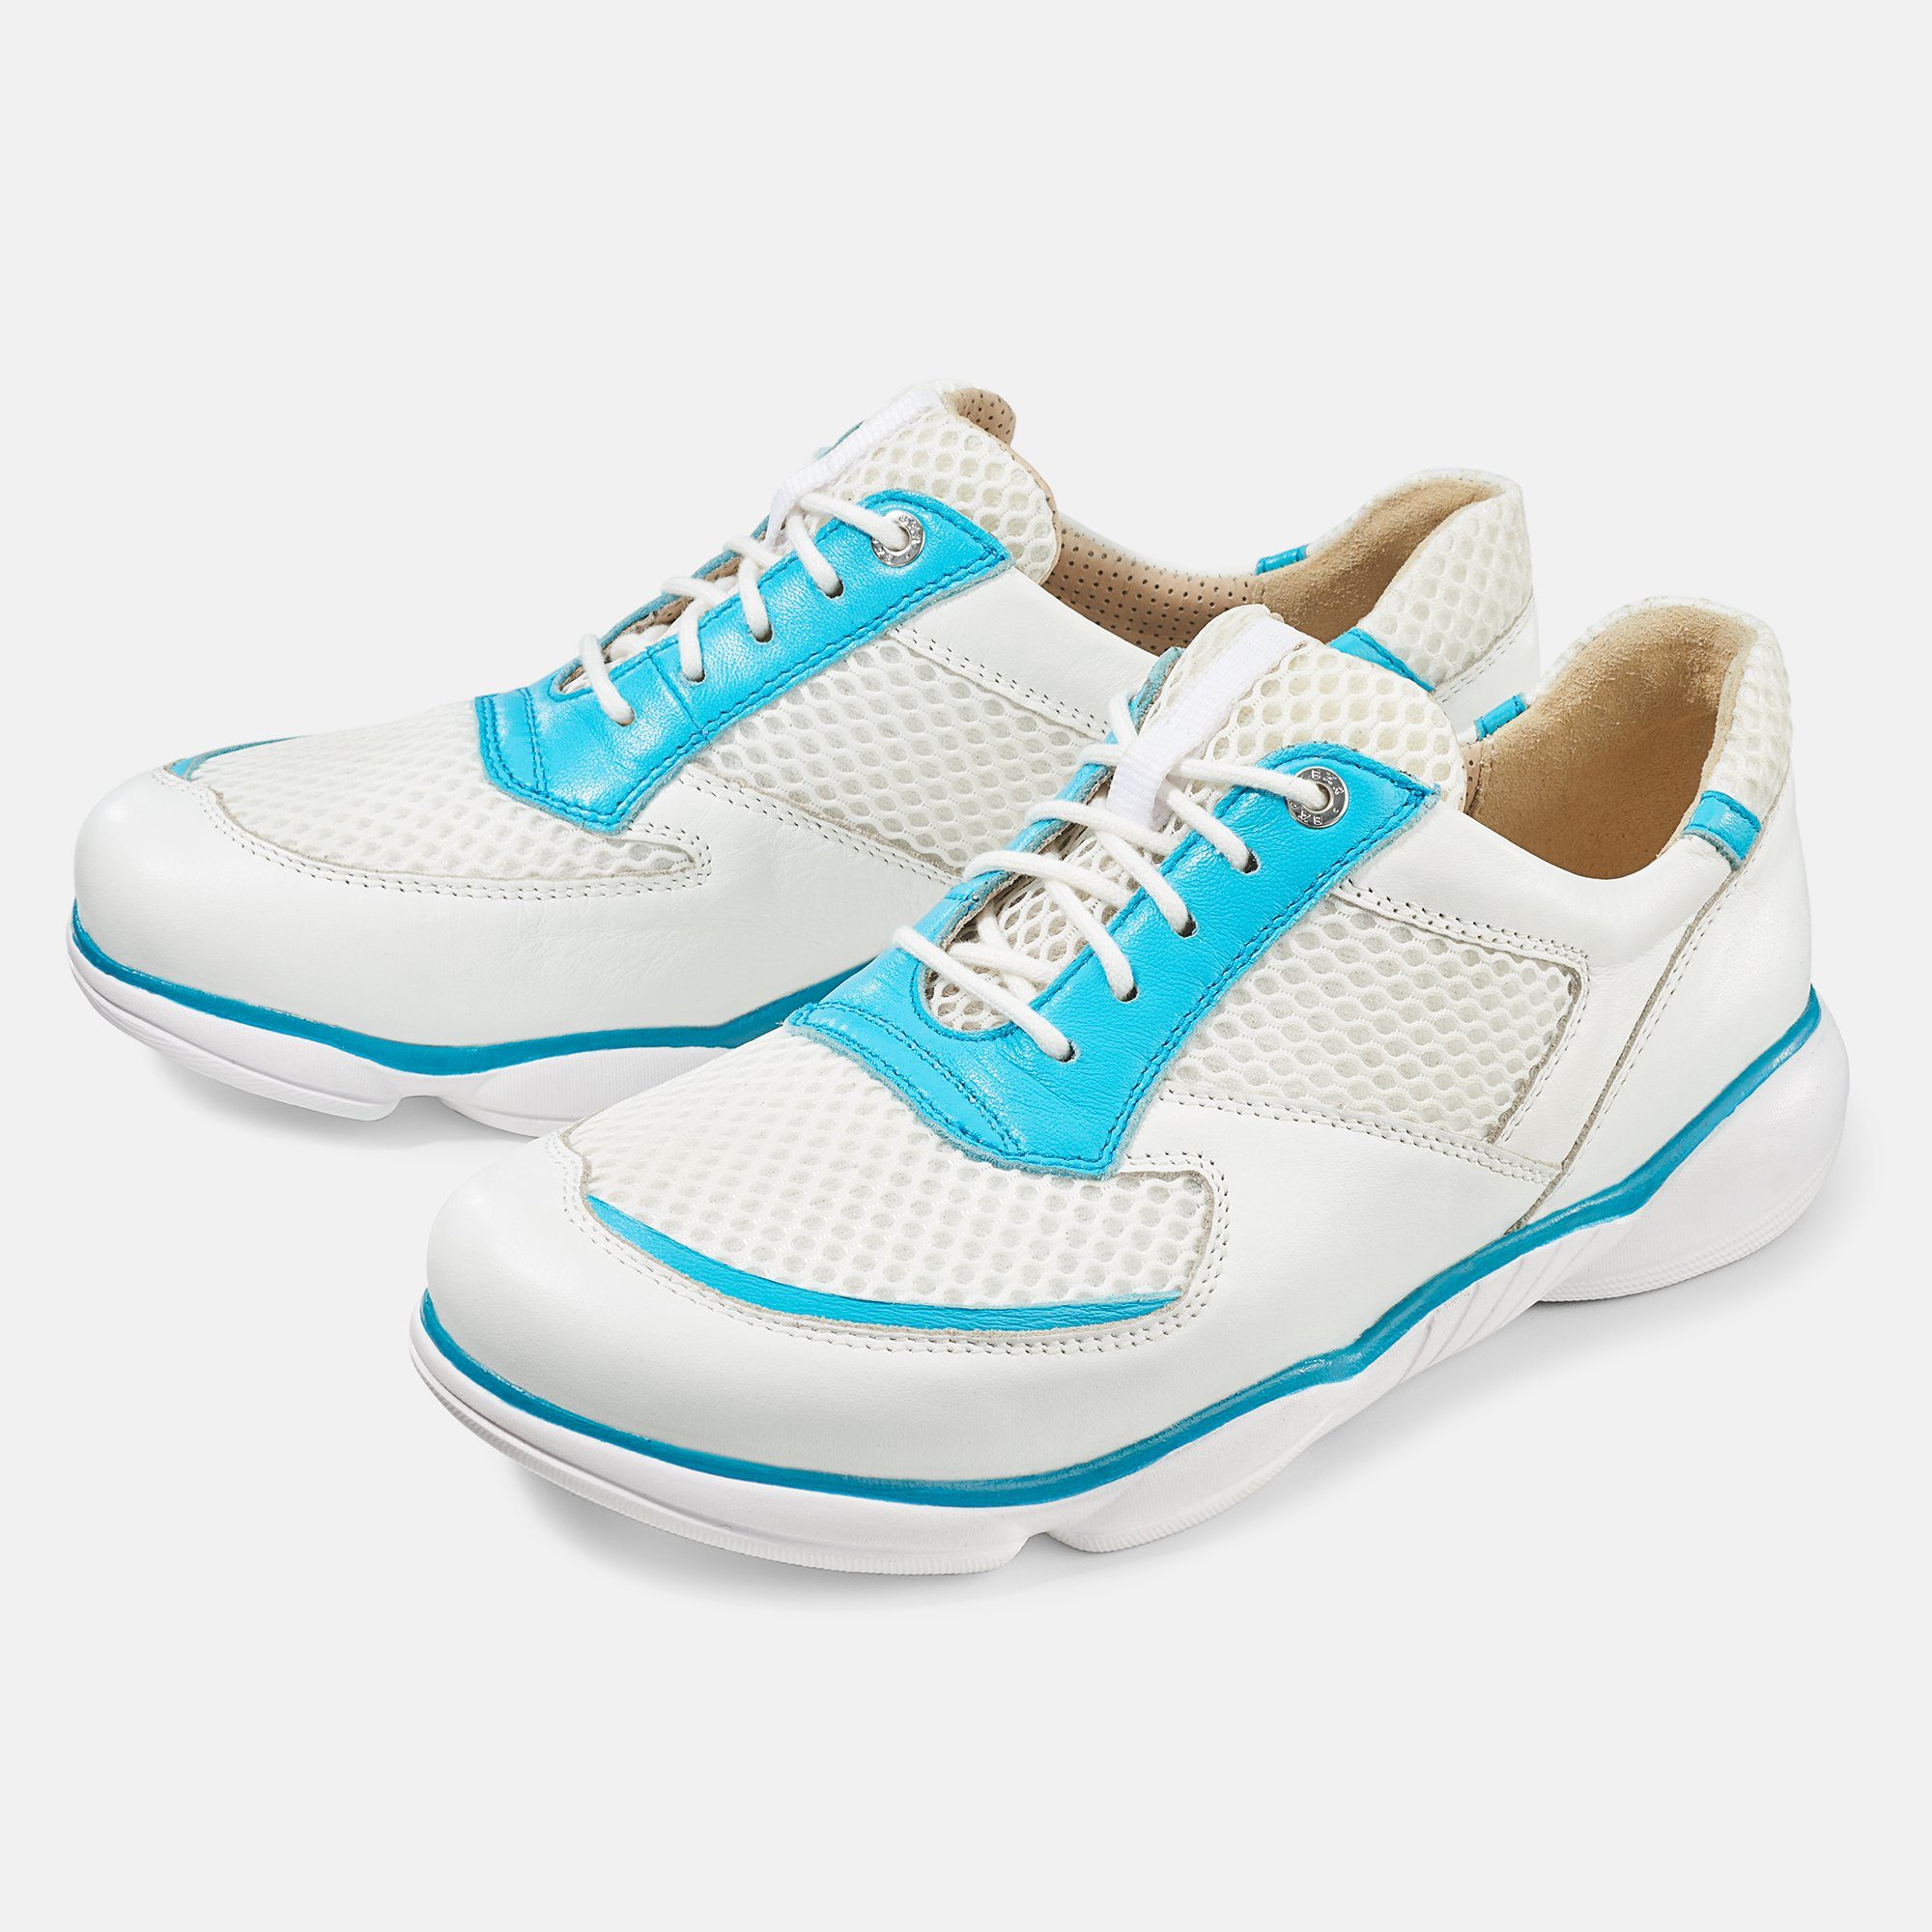 BÄR Schuhe Damenschuh - Modell Teresa in der Farbe Weiß/Türkis Sneaker